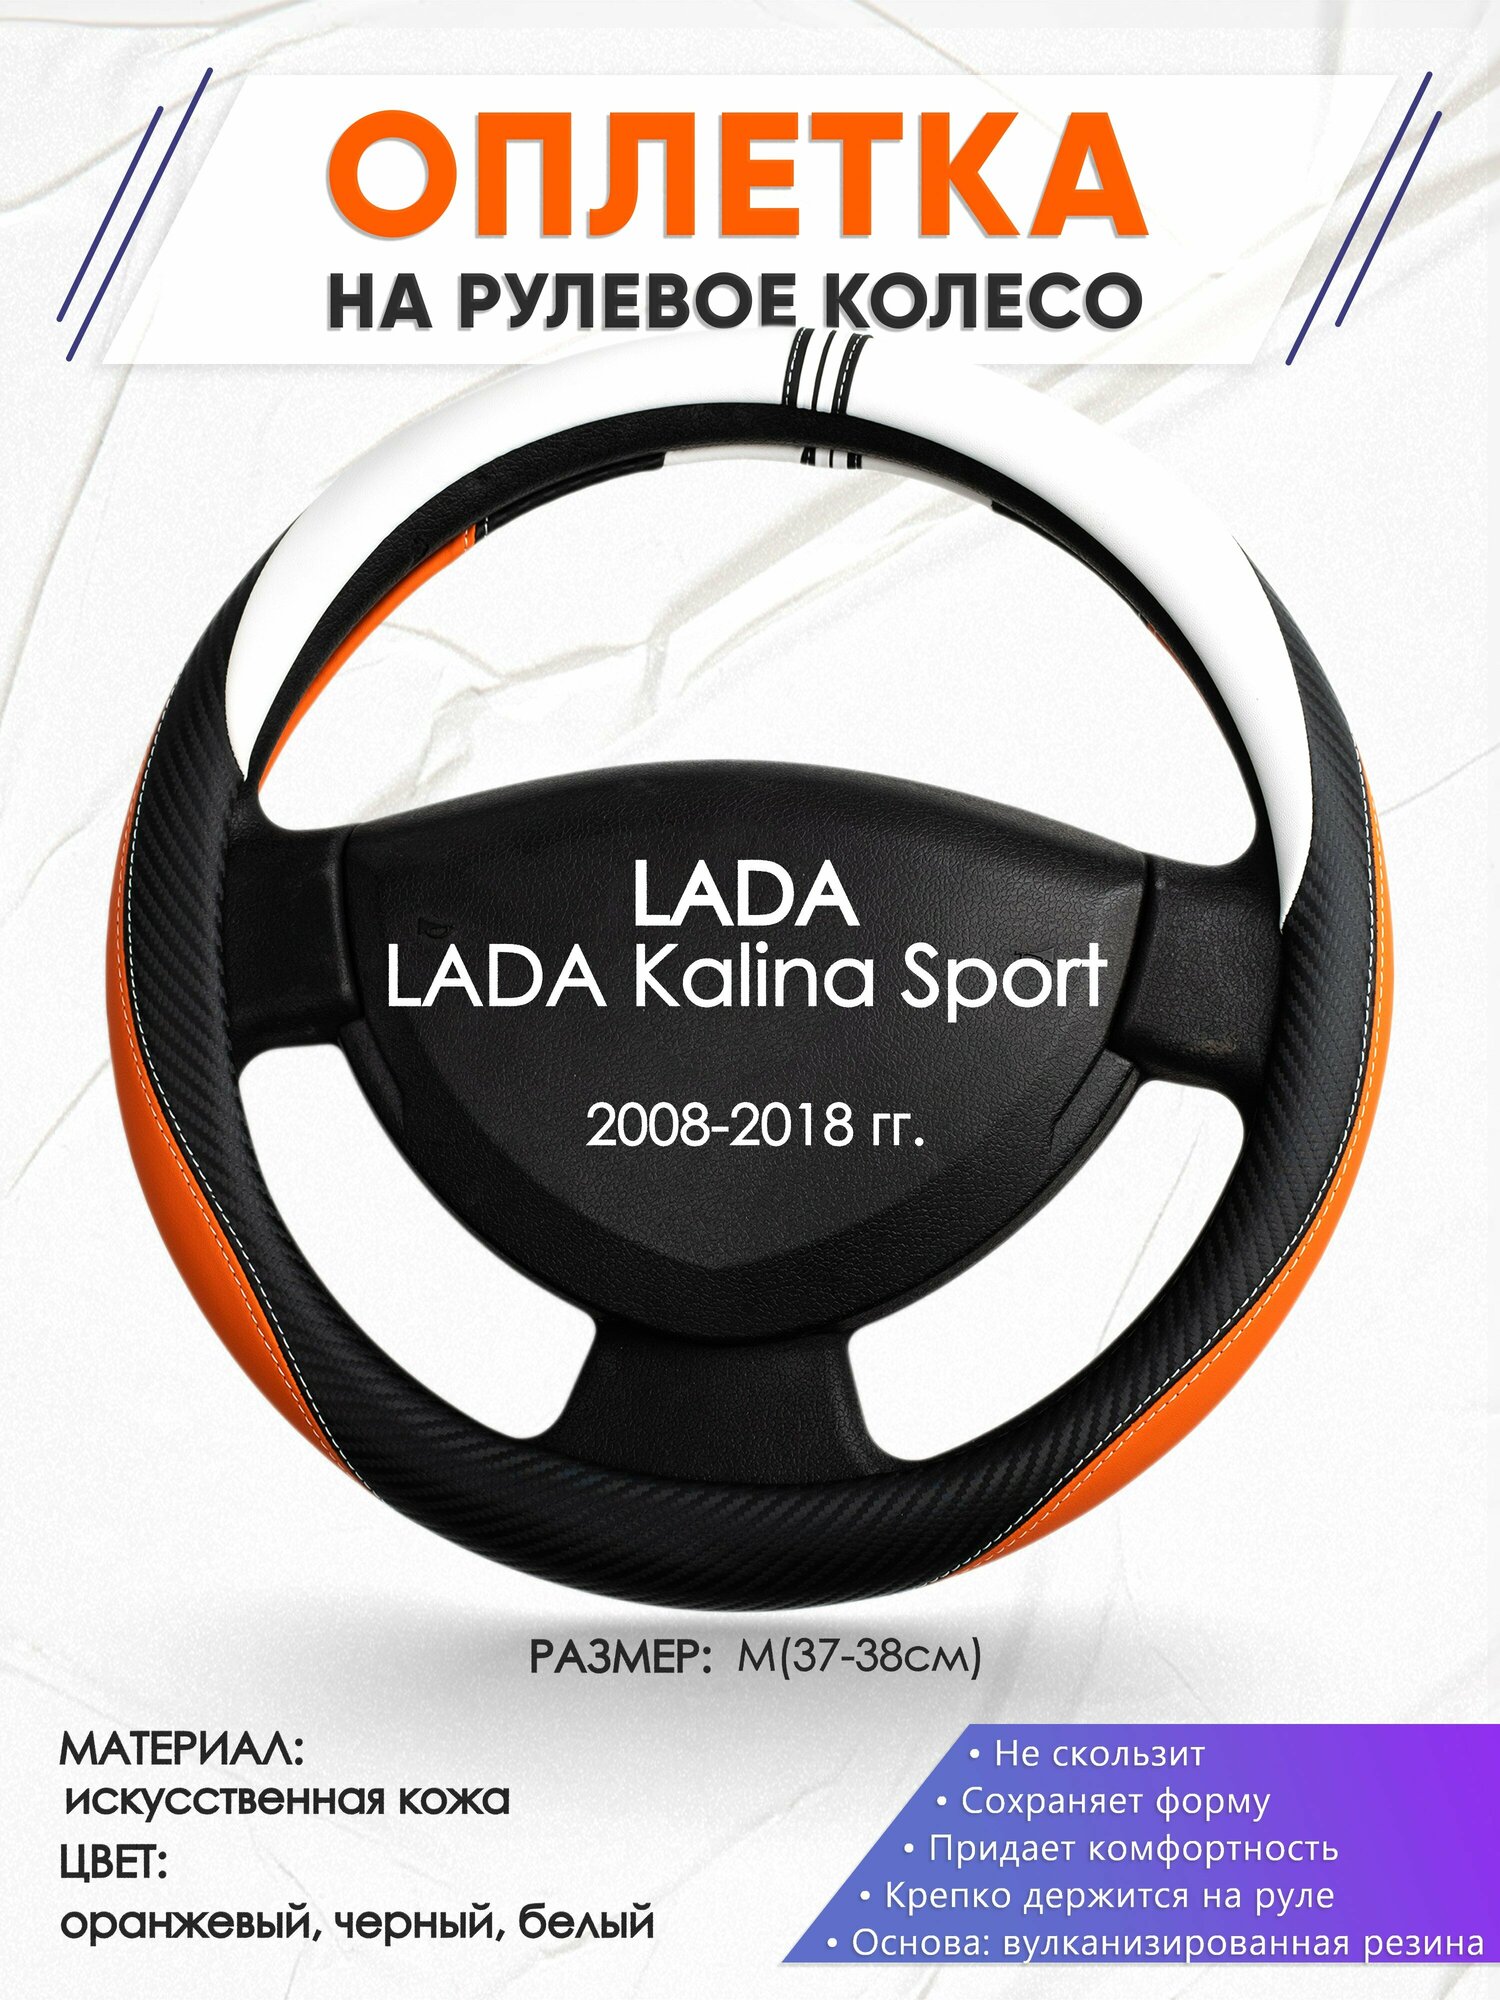 Оплетка наруль для LADA Kalina Sport(Лада Калина спорт) 2008-2018 годов выпуска, размер M(37-38см), Искусственная кожа 57